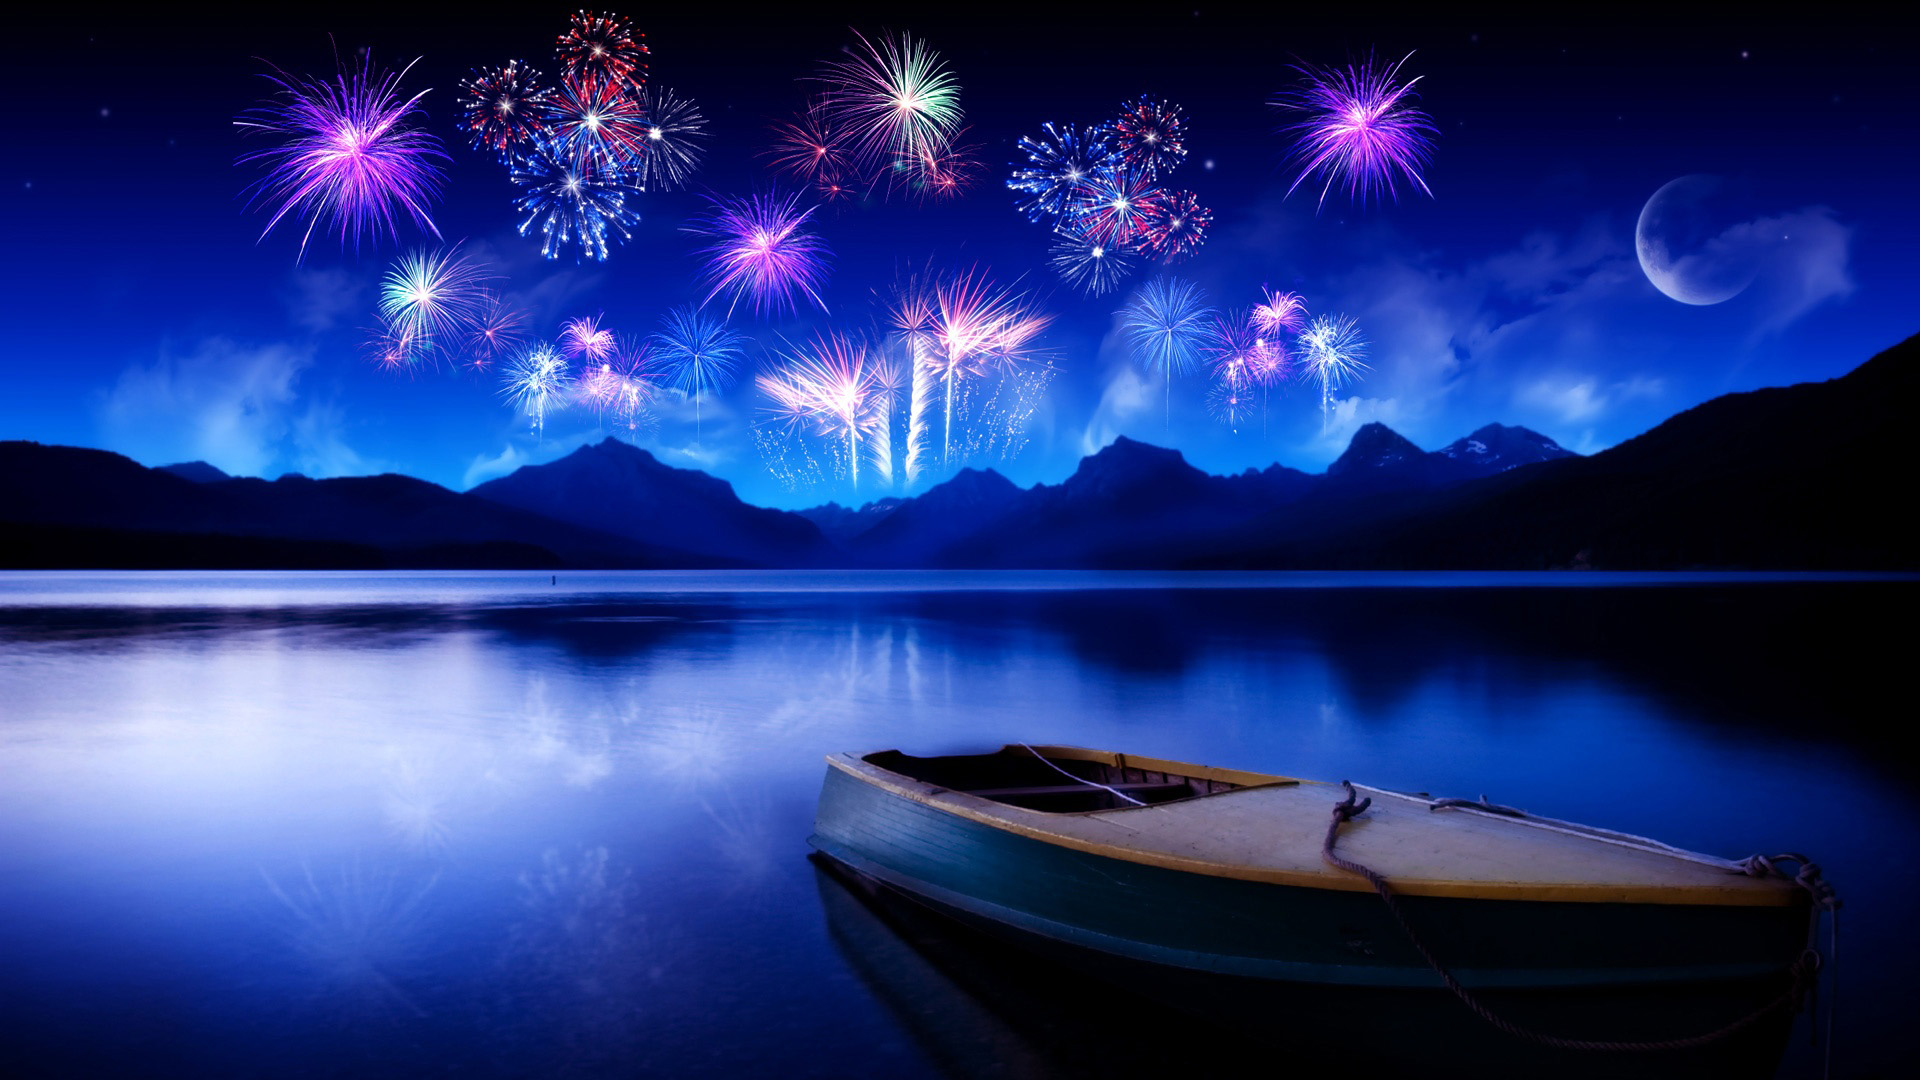 新年快乐,灿烂烟花,湖水,小船,风景桌面壁纸